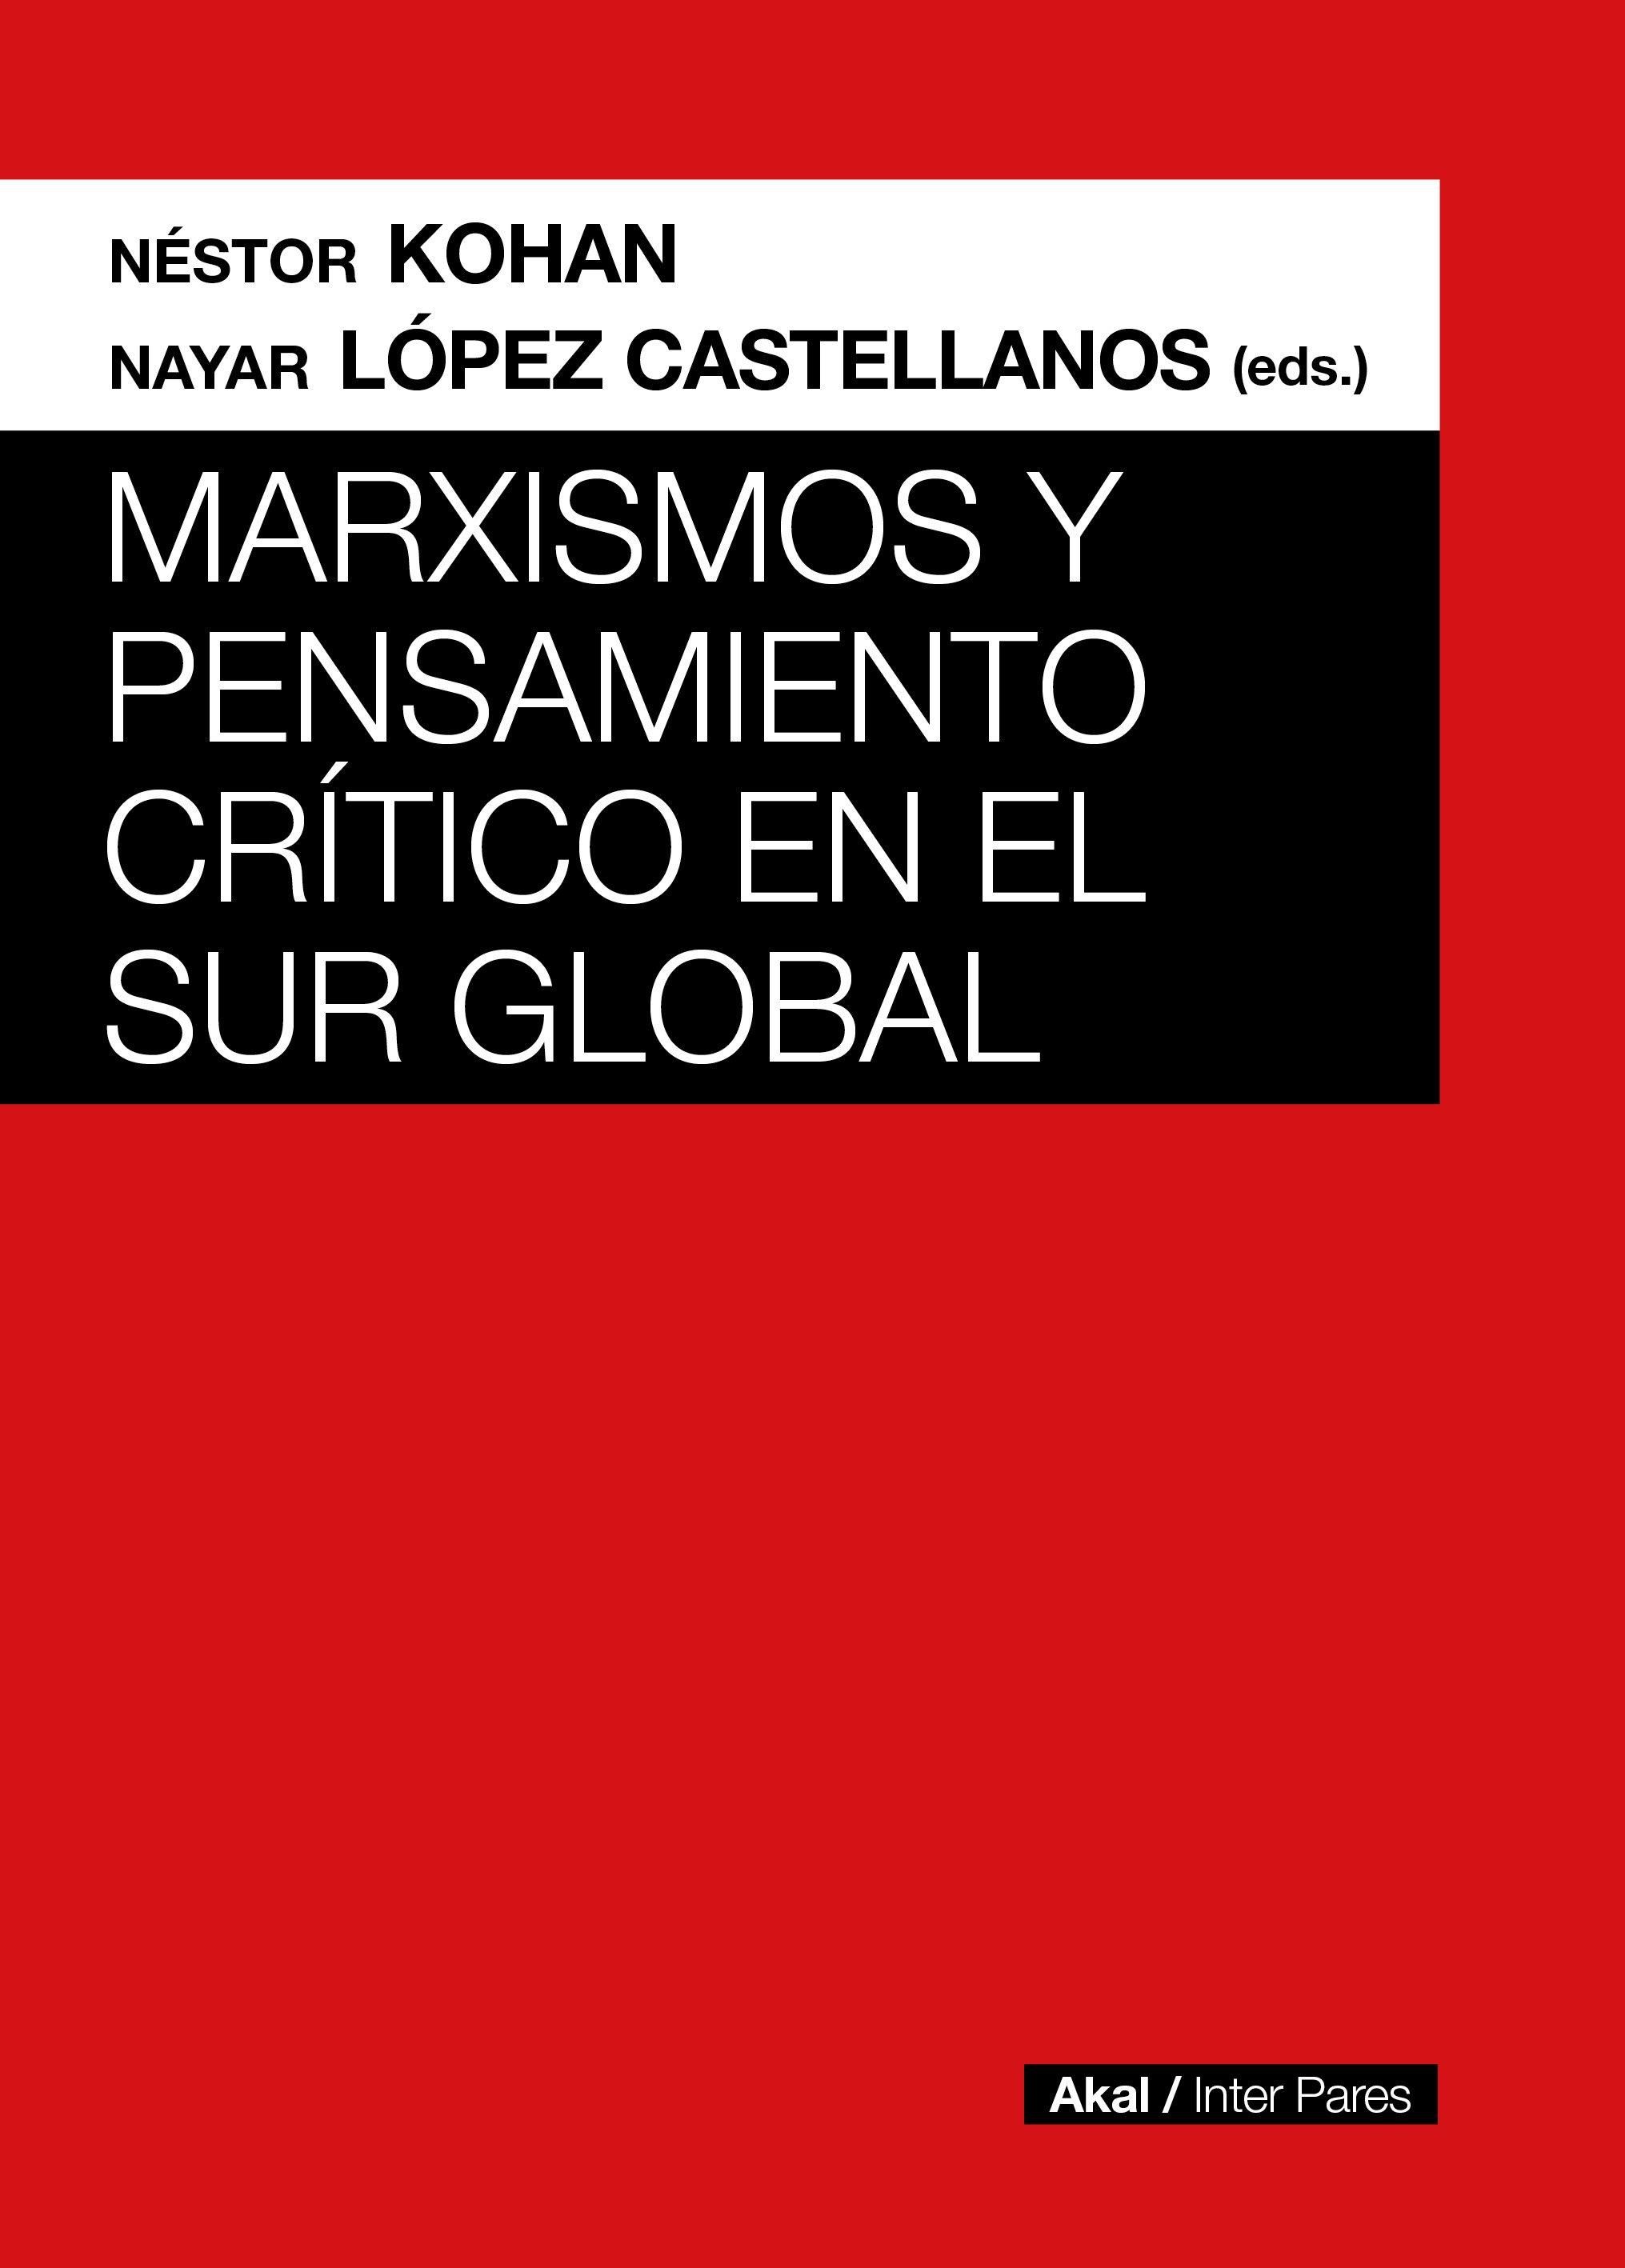 MARXISMOS Y PENSAMIENTO CRÍTICO EN EL SUR GLOBAL - Néstor Kohan | Nayar López Castellanos